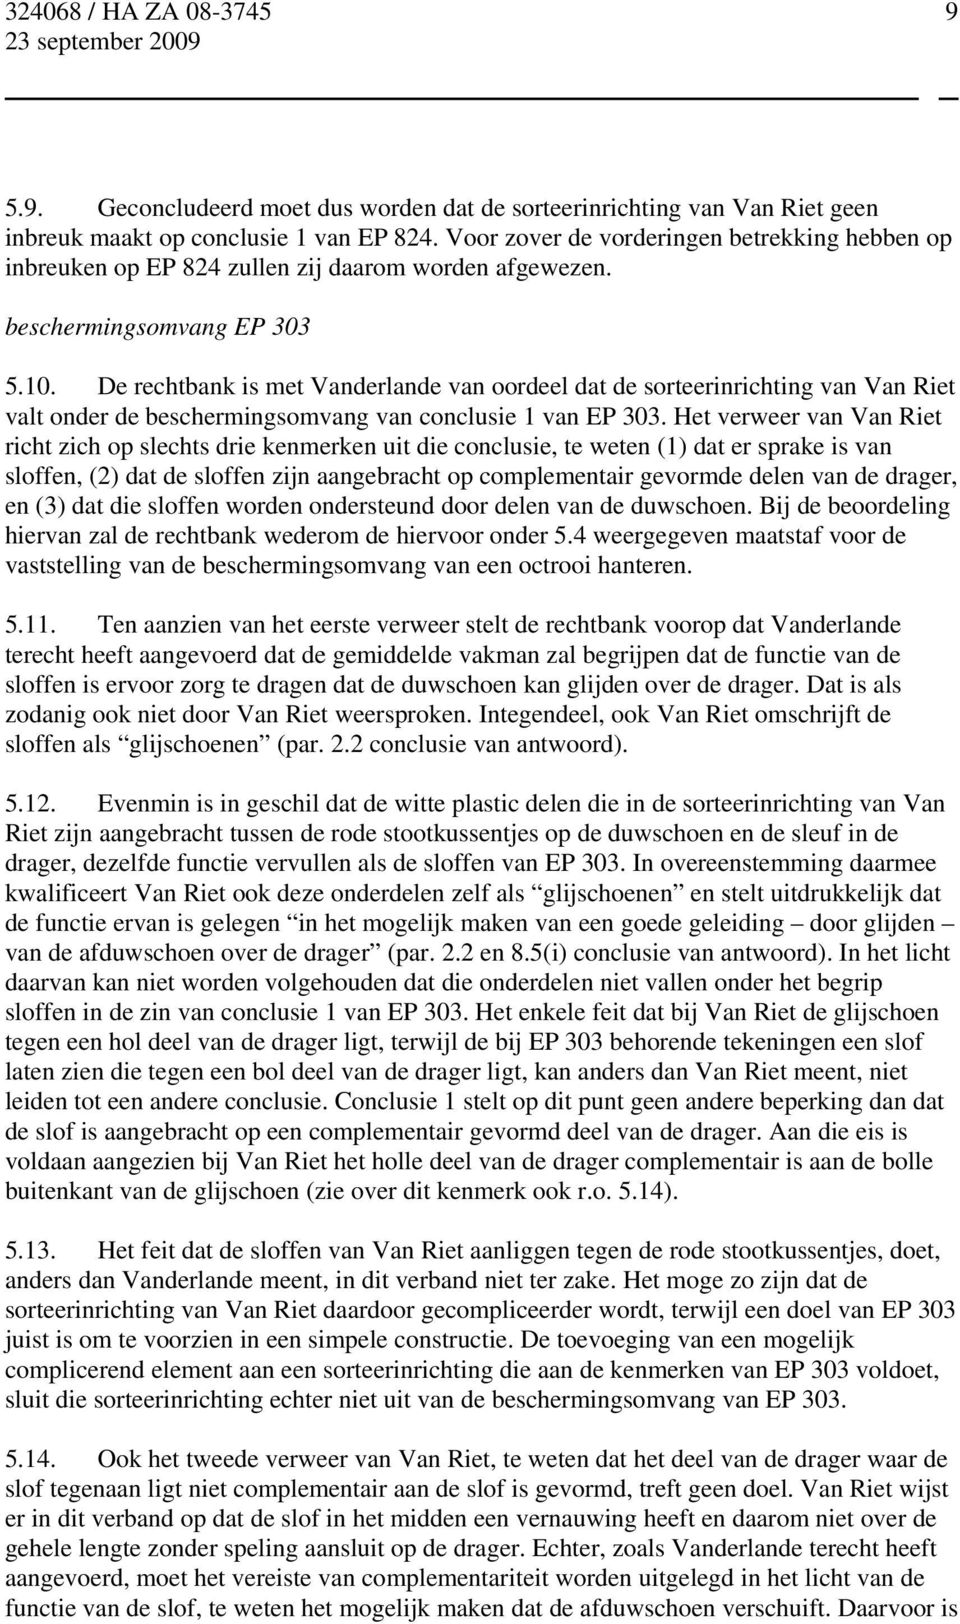 De rechtbank is met Vanderlande van oordeel dat de sorteerinrichting van Van Riet valt onder de beschermingsomvang van conclusie 1 van EP 303.